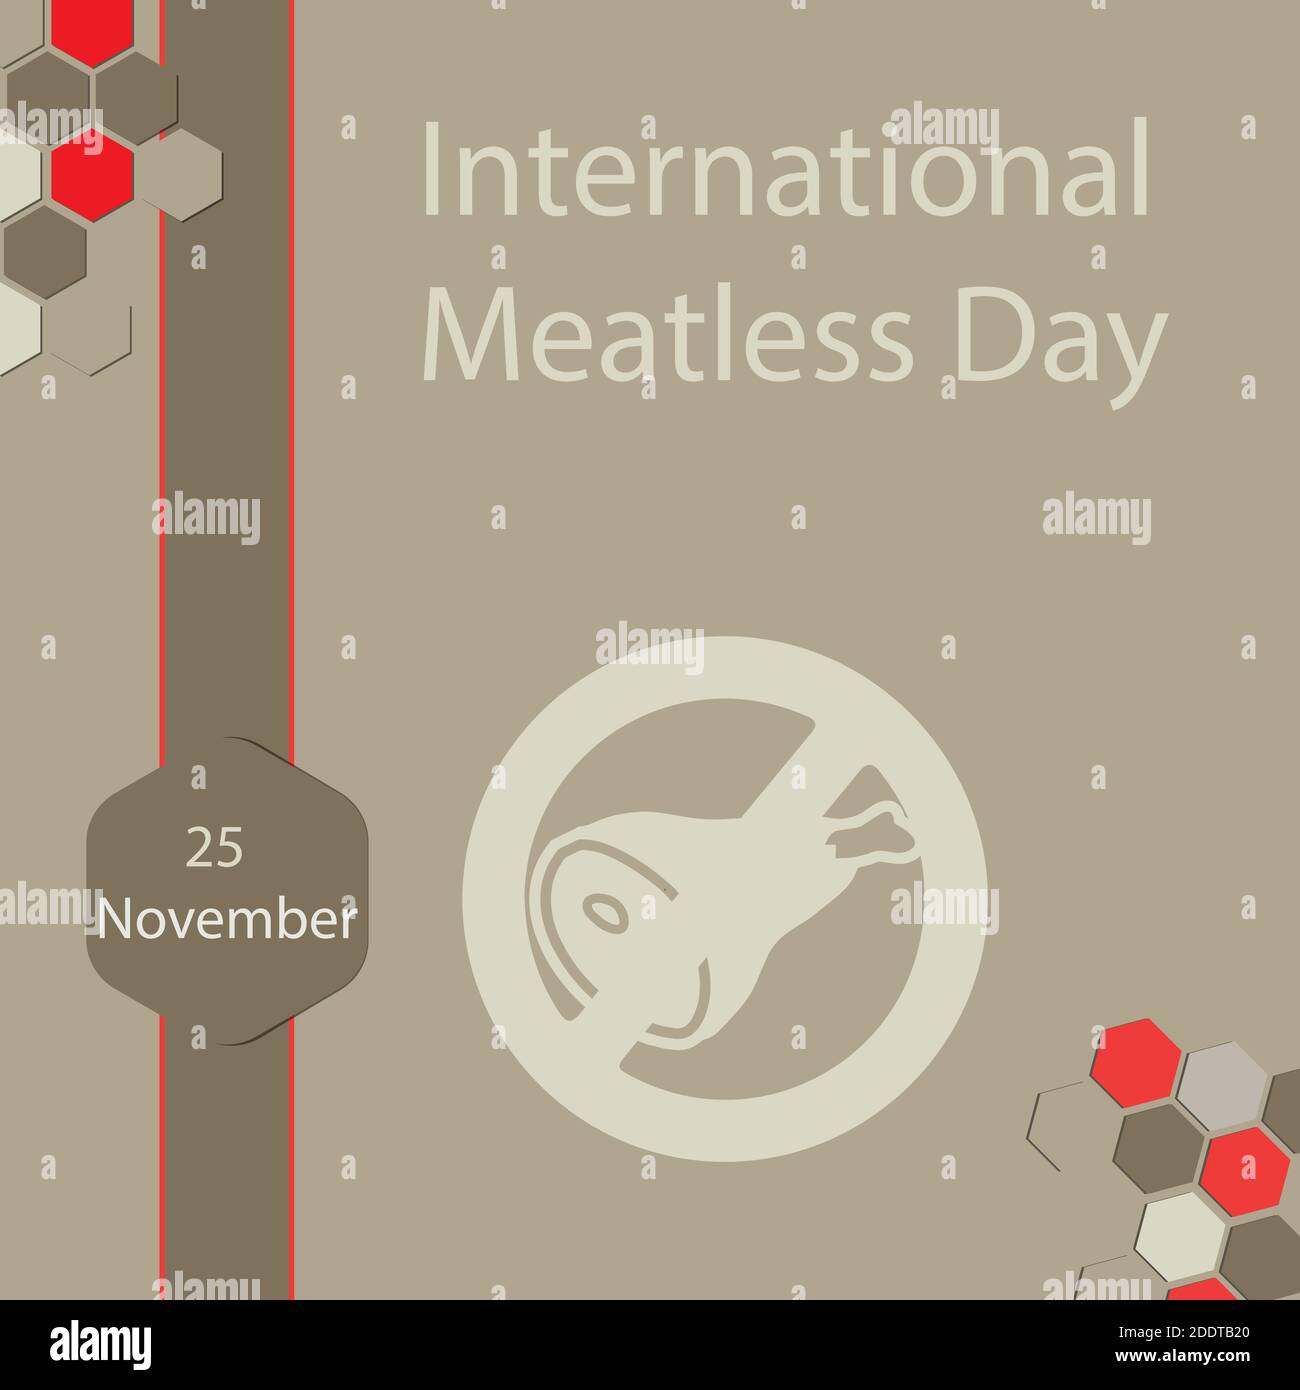 La Giornata Internazionale senza pasto, chiamata anche "Giornata Internazionale Vegetariana", è il 25 novembre. Illustrazione Vettoriale